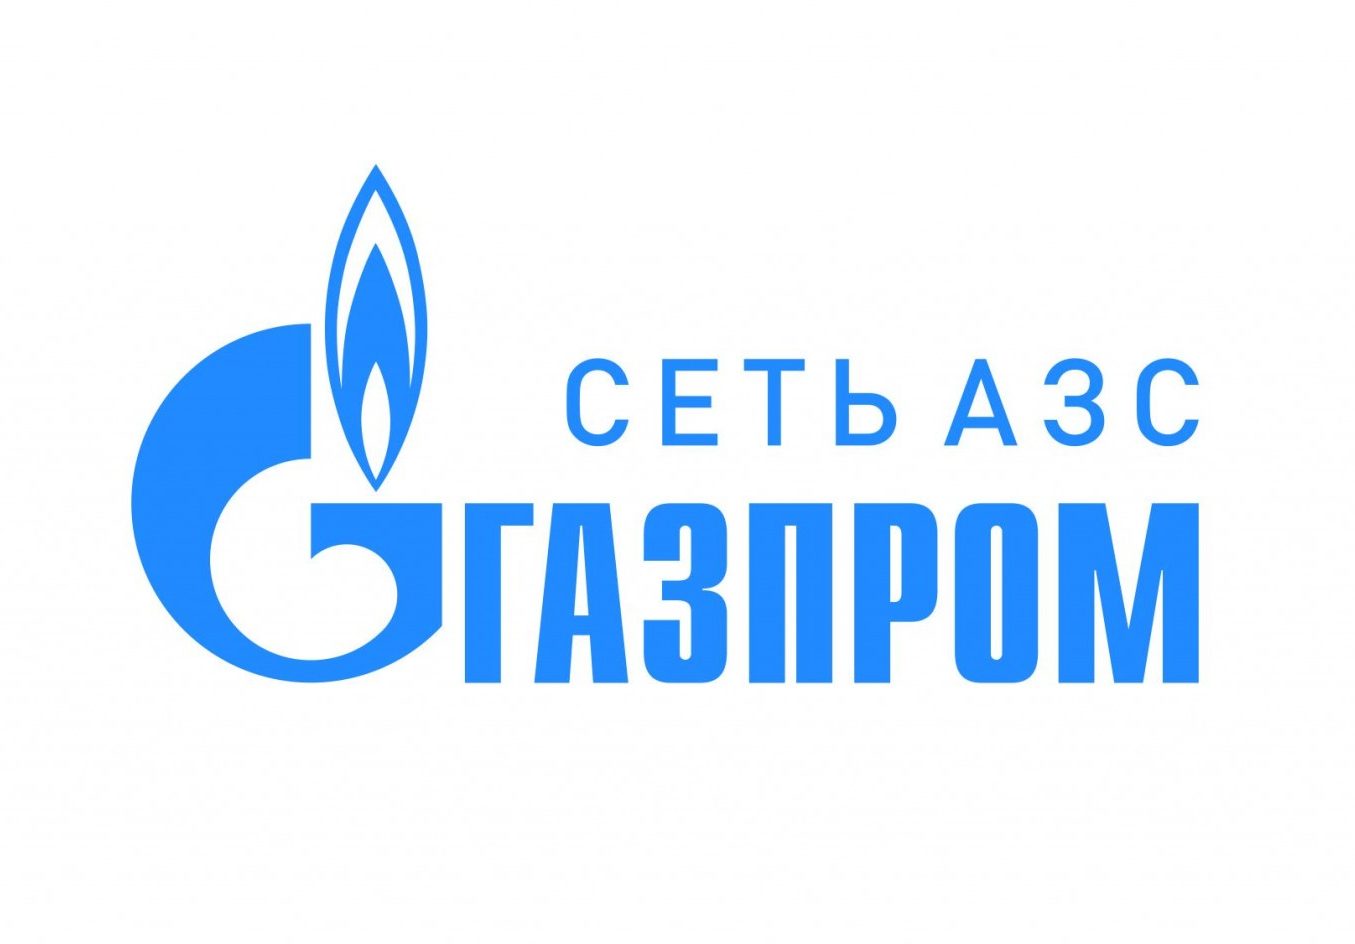 Ищите боксы на АЗС "Газпром"